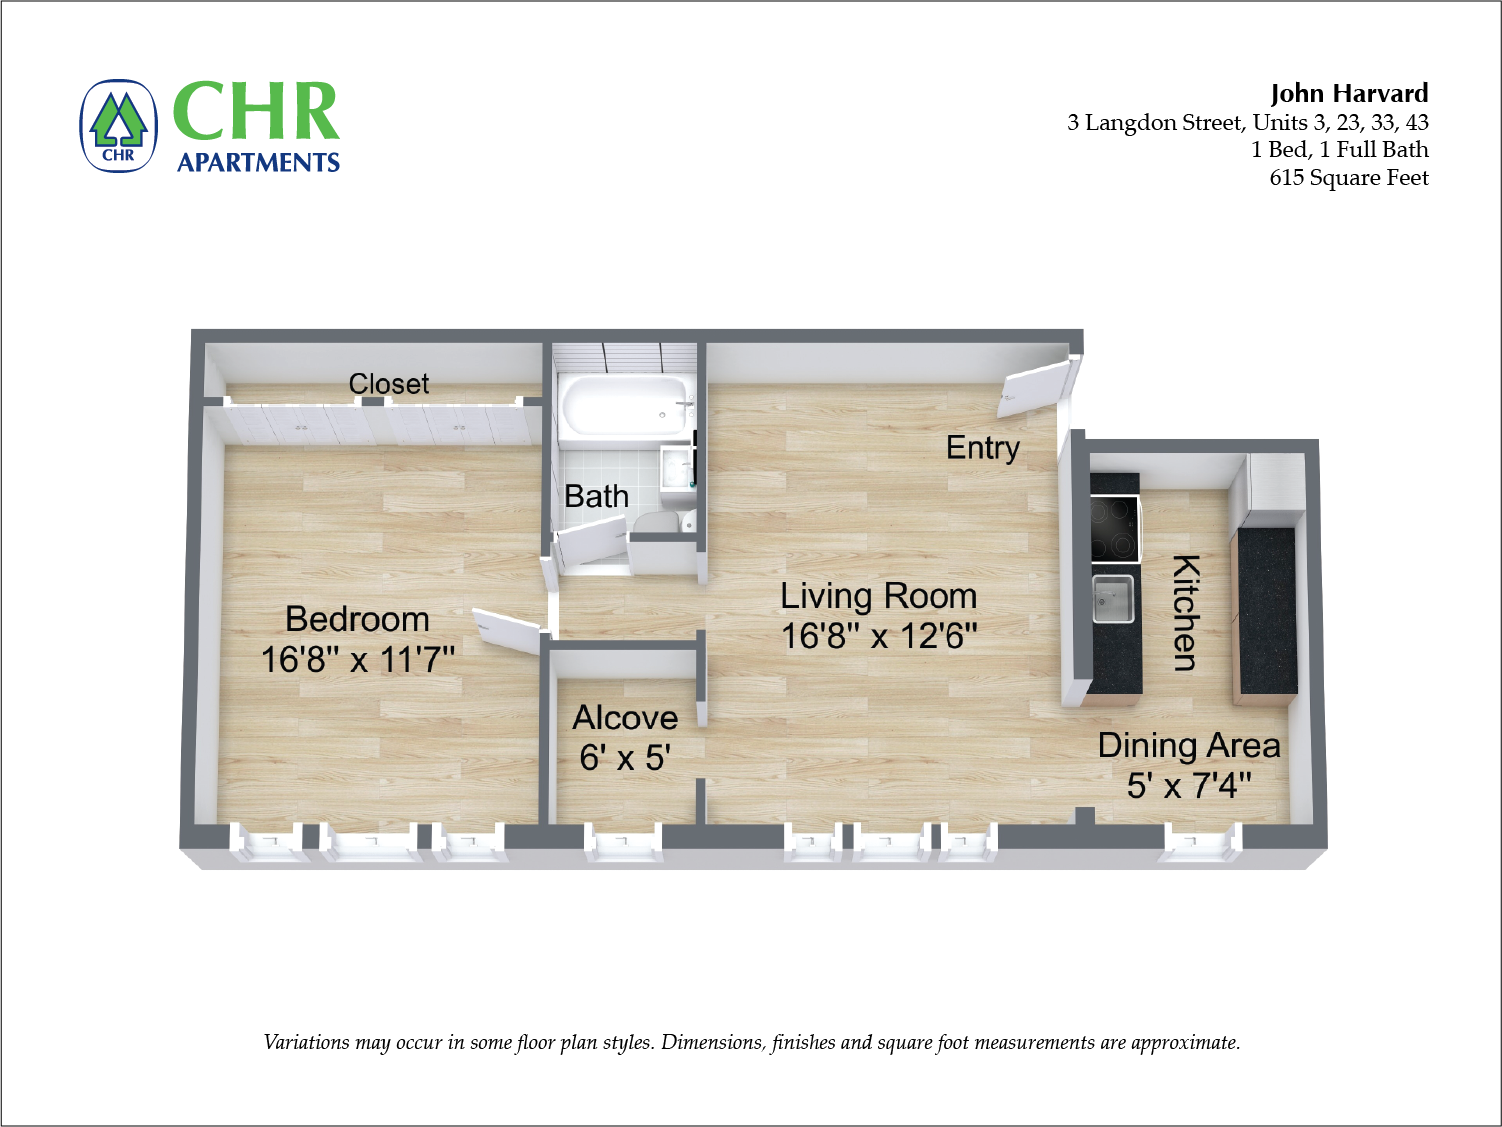 Click to view Floor plan John Harvard - 1 Bedroom image 4